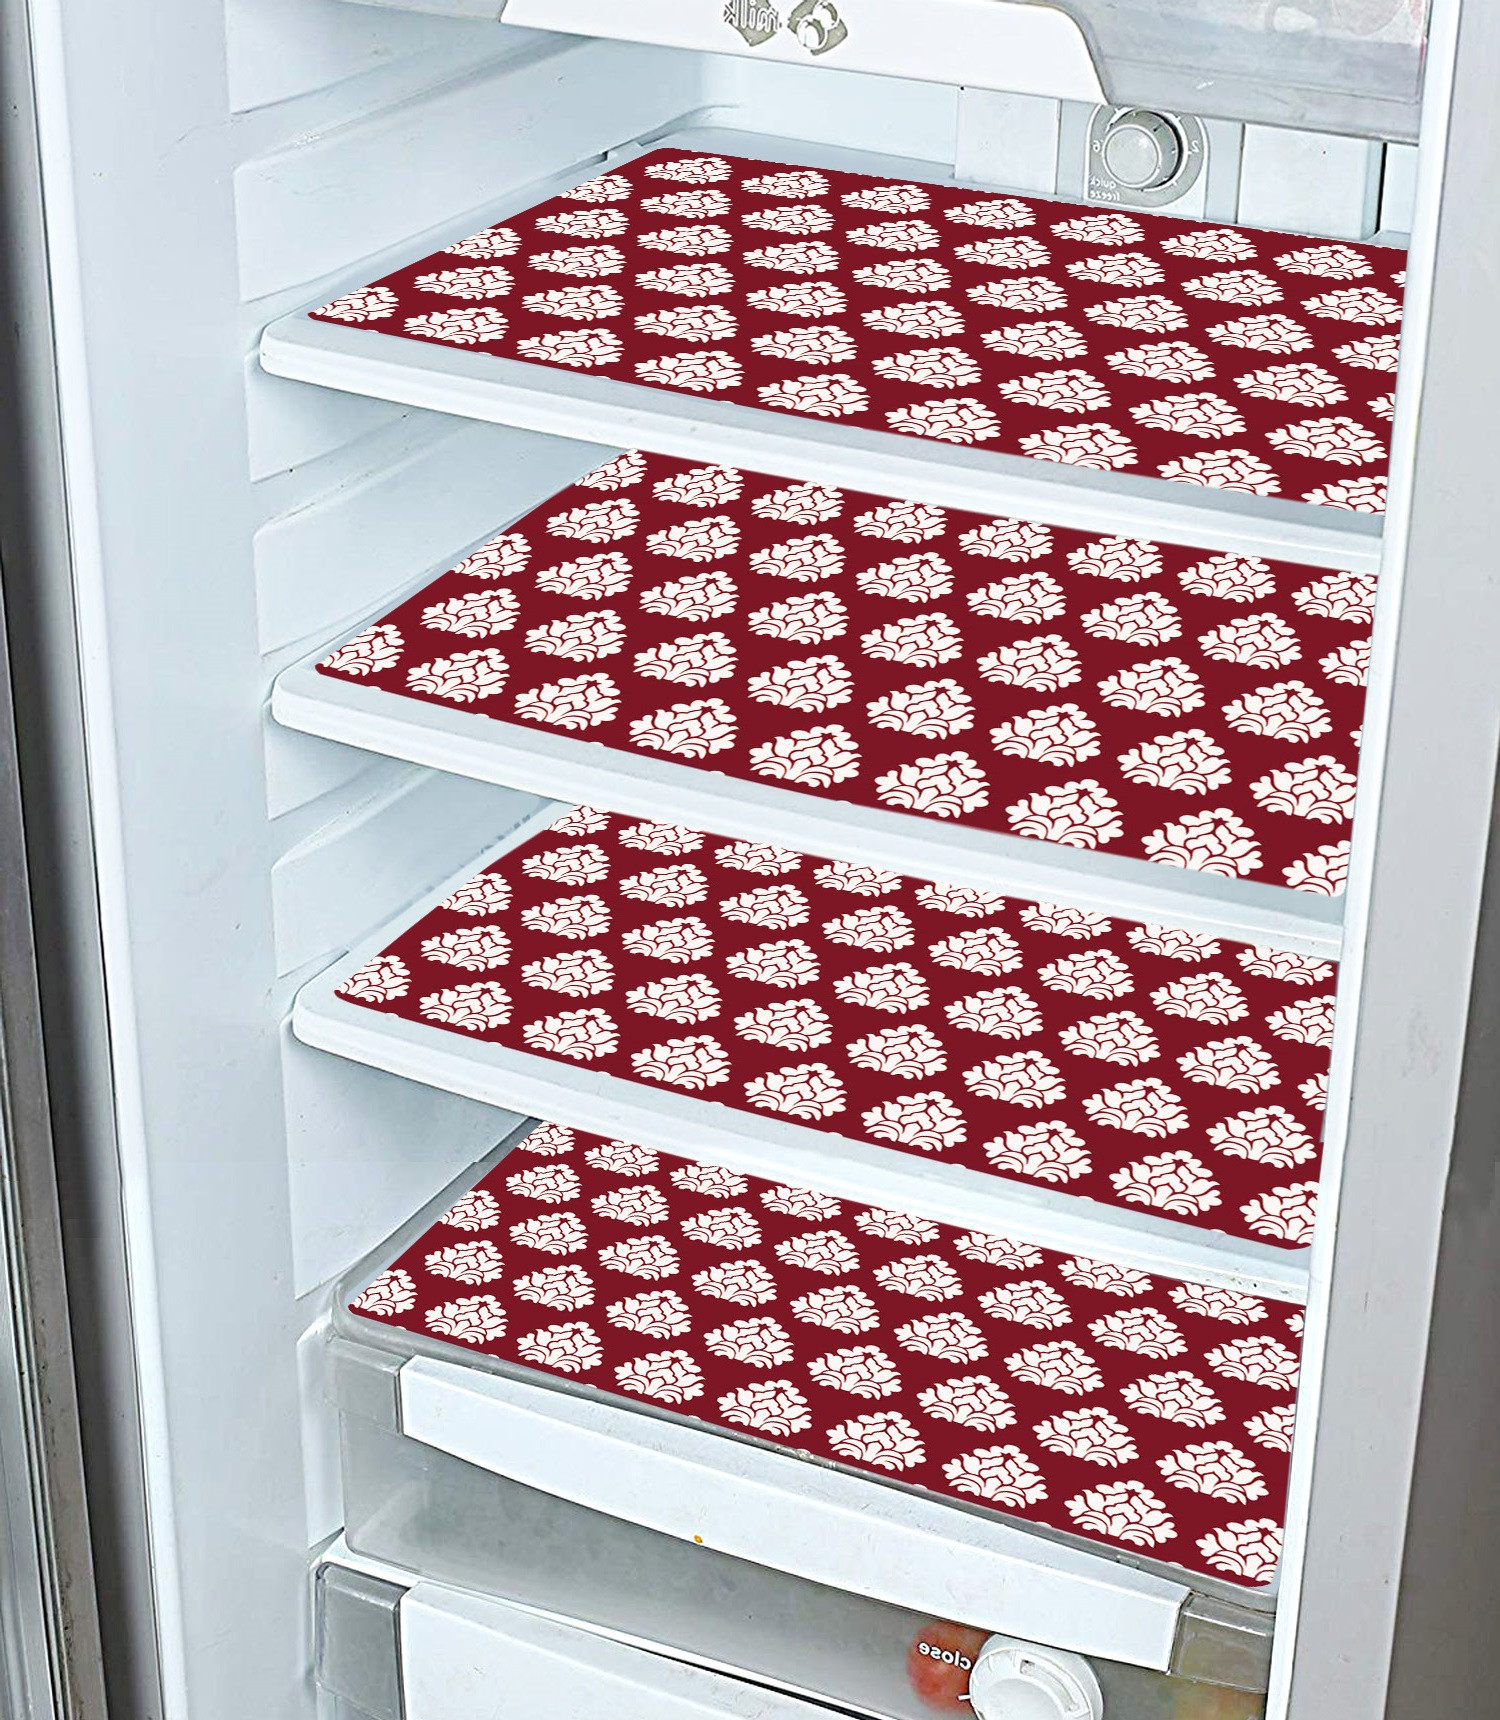 Kuber Industries Flower Print Waterproof, Stain Resistant, Washable Refrigerator/Fridge Drawer Mat, Set of 6 (Maroon)